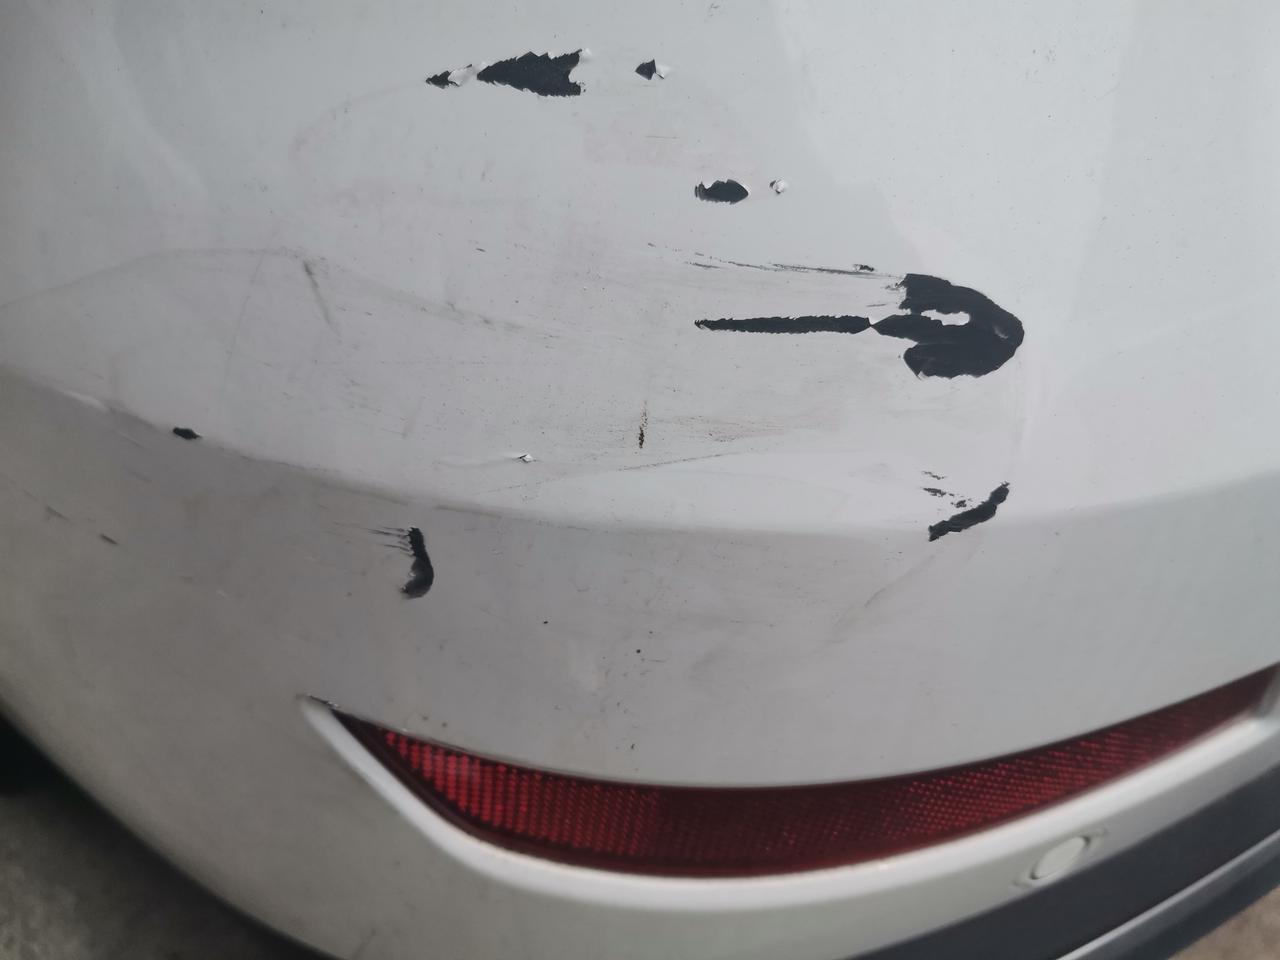 哈弗m6 这种怎么办，漏底漆了，停车位被剐蹭，没摄像头，自己补漆笔行吗